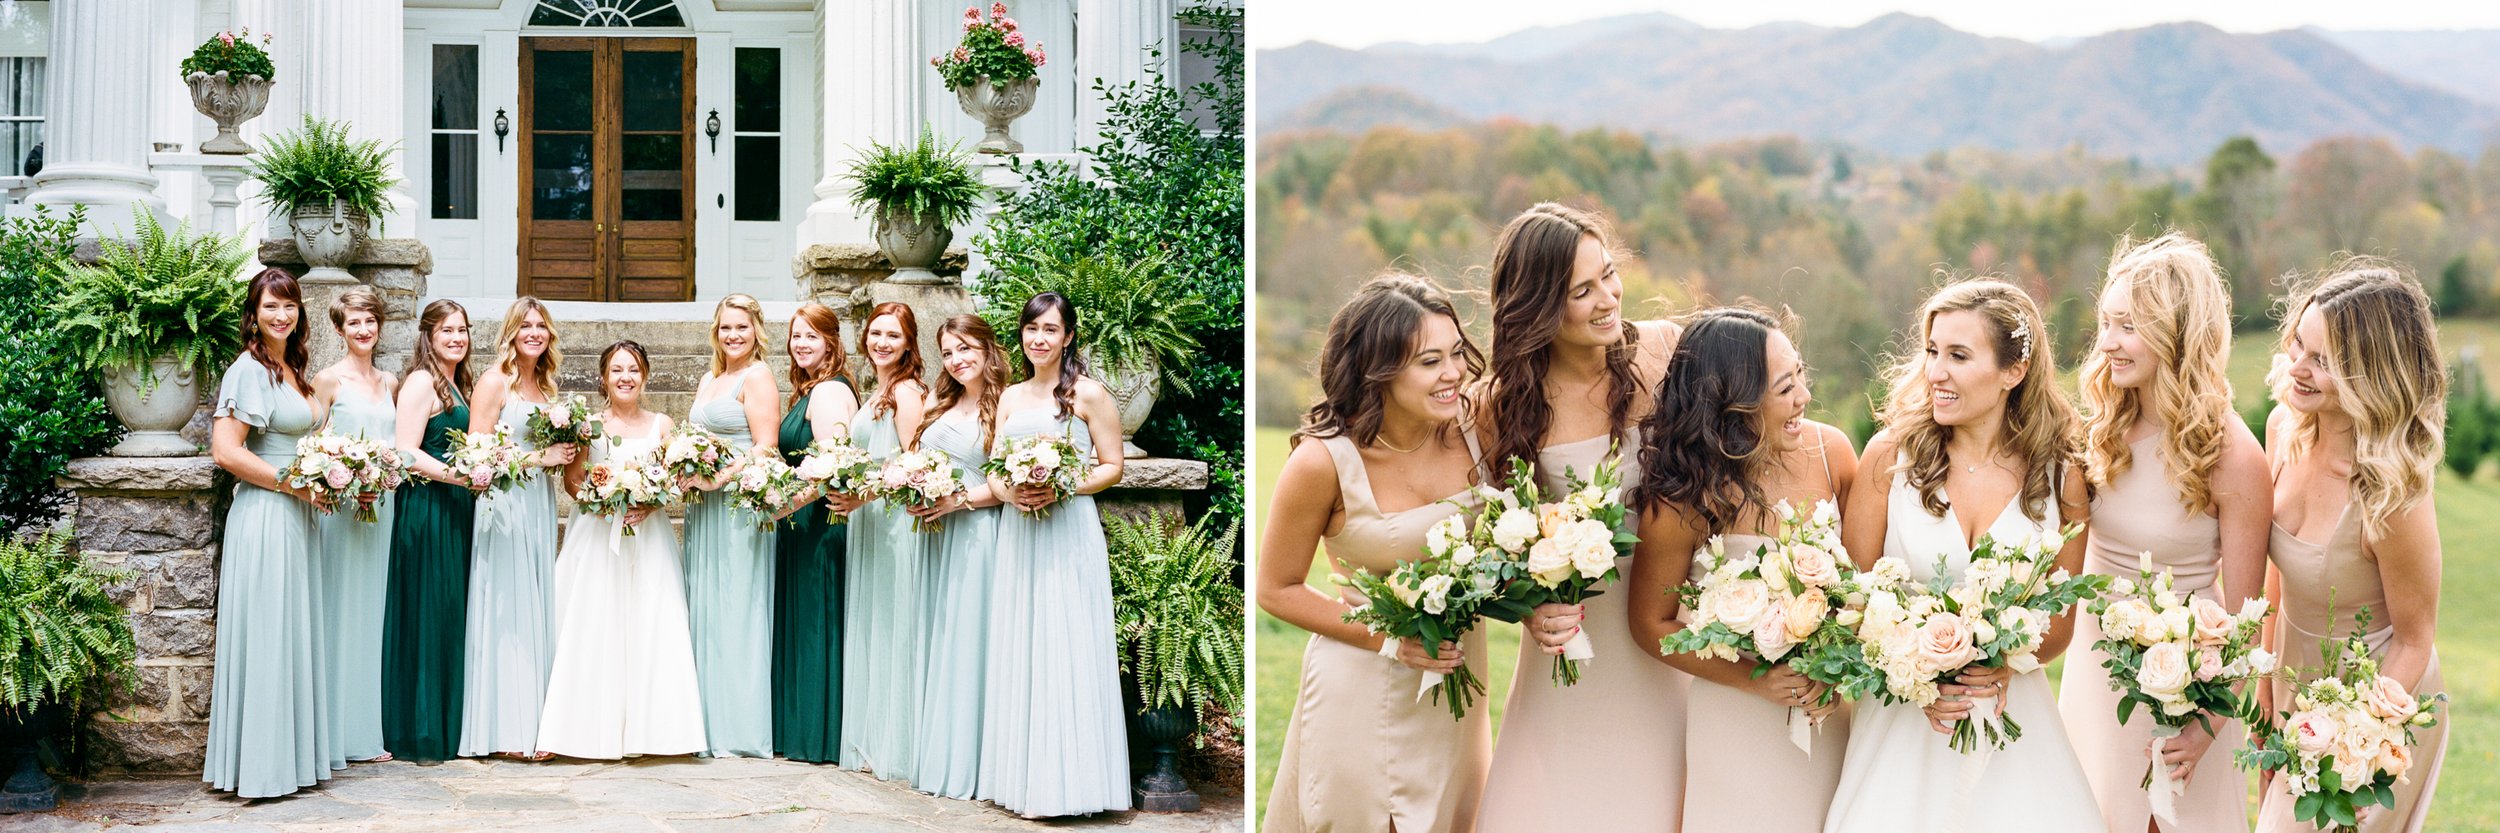 Wedding-photographer-Asheville-2021-7.jpg